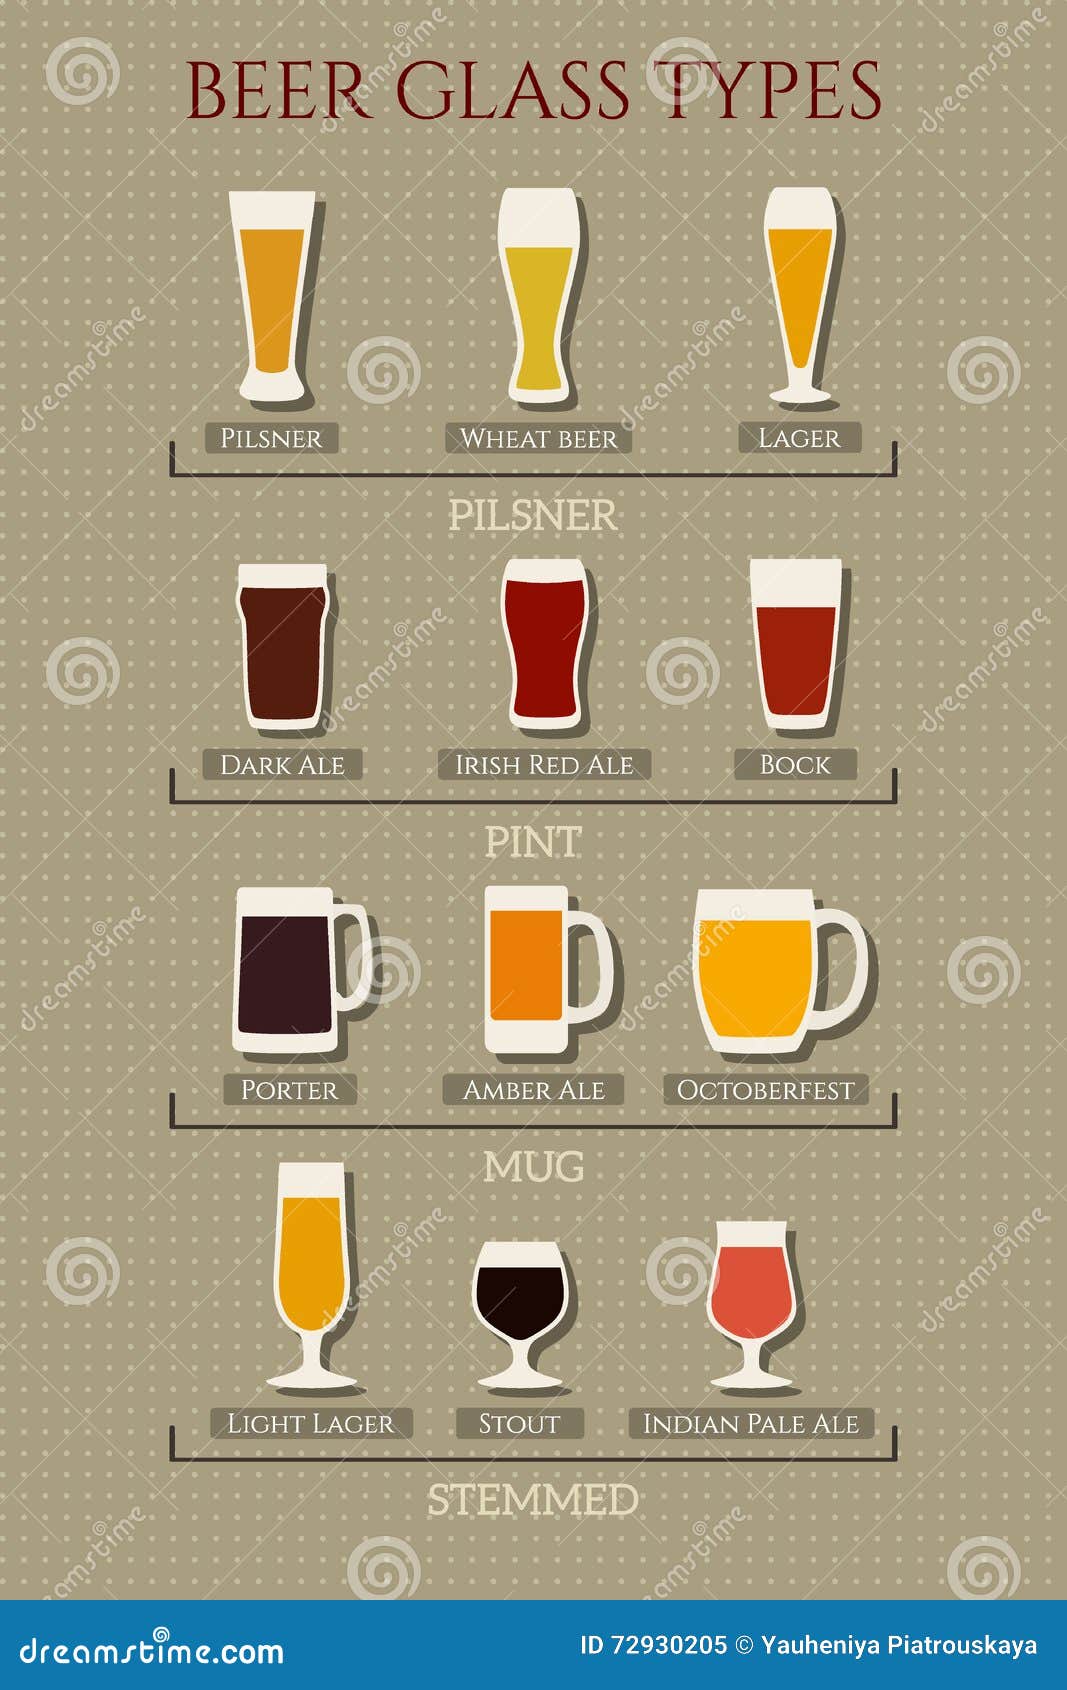 Panorama Slager erwt De types van bierglas vector illustratie. Illustration of minimalistisch -  72930205